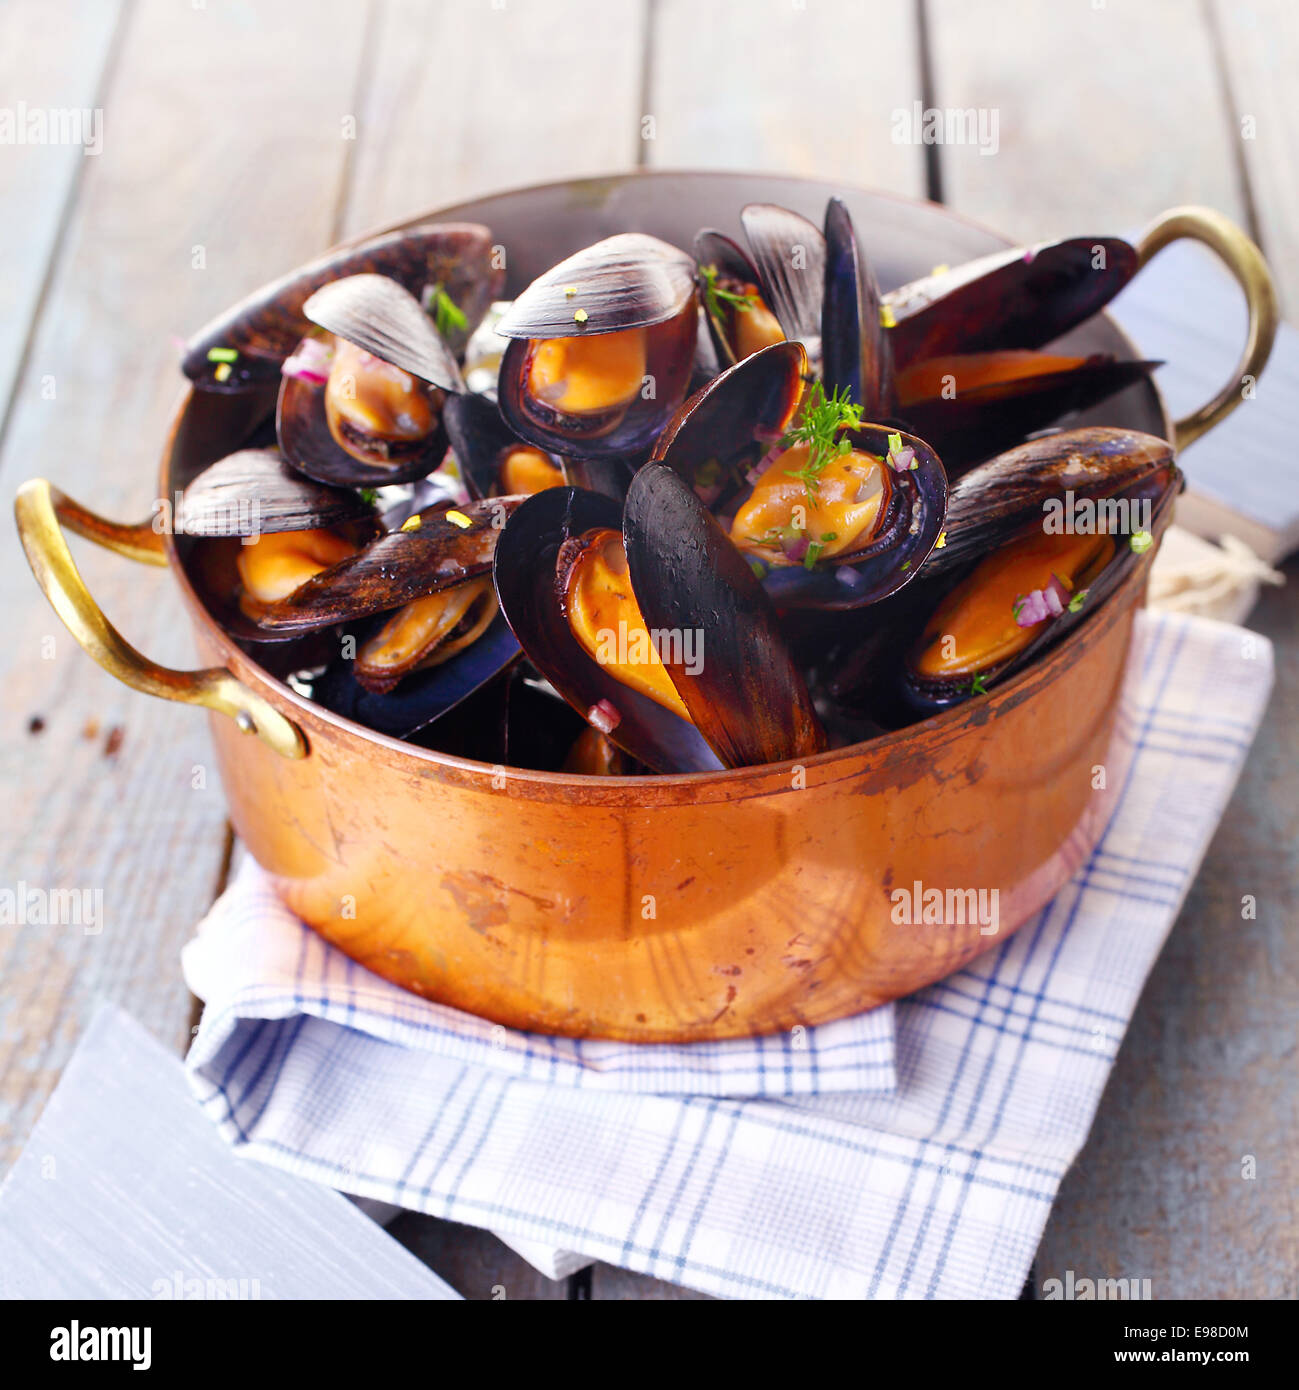 Kupfer Topf Gourmet Muscheln serviert auf einer Serviette, garniert mit frischen Kräutern für eine leckere Meeresfrüchte essen Stockfoto